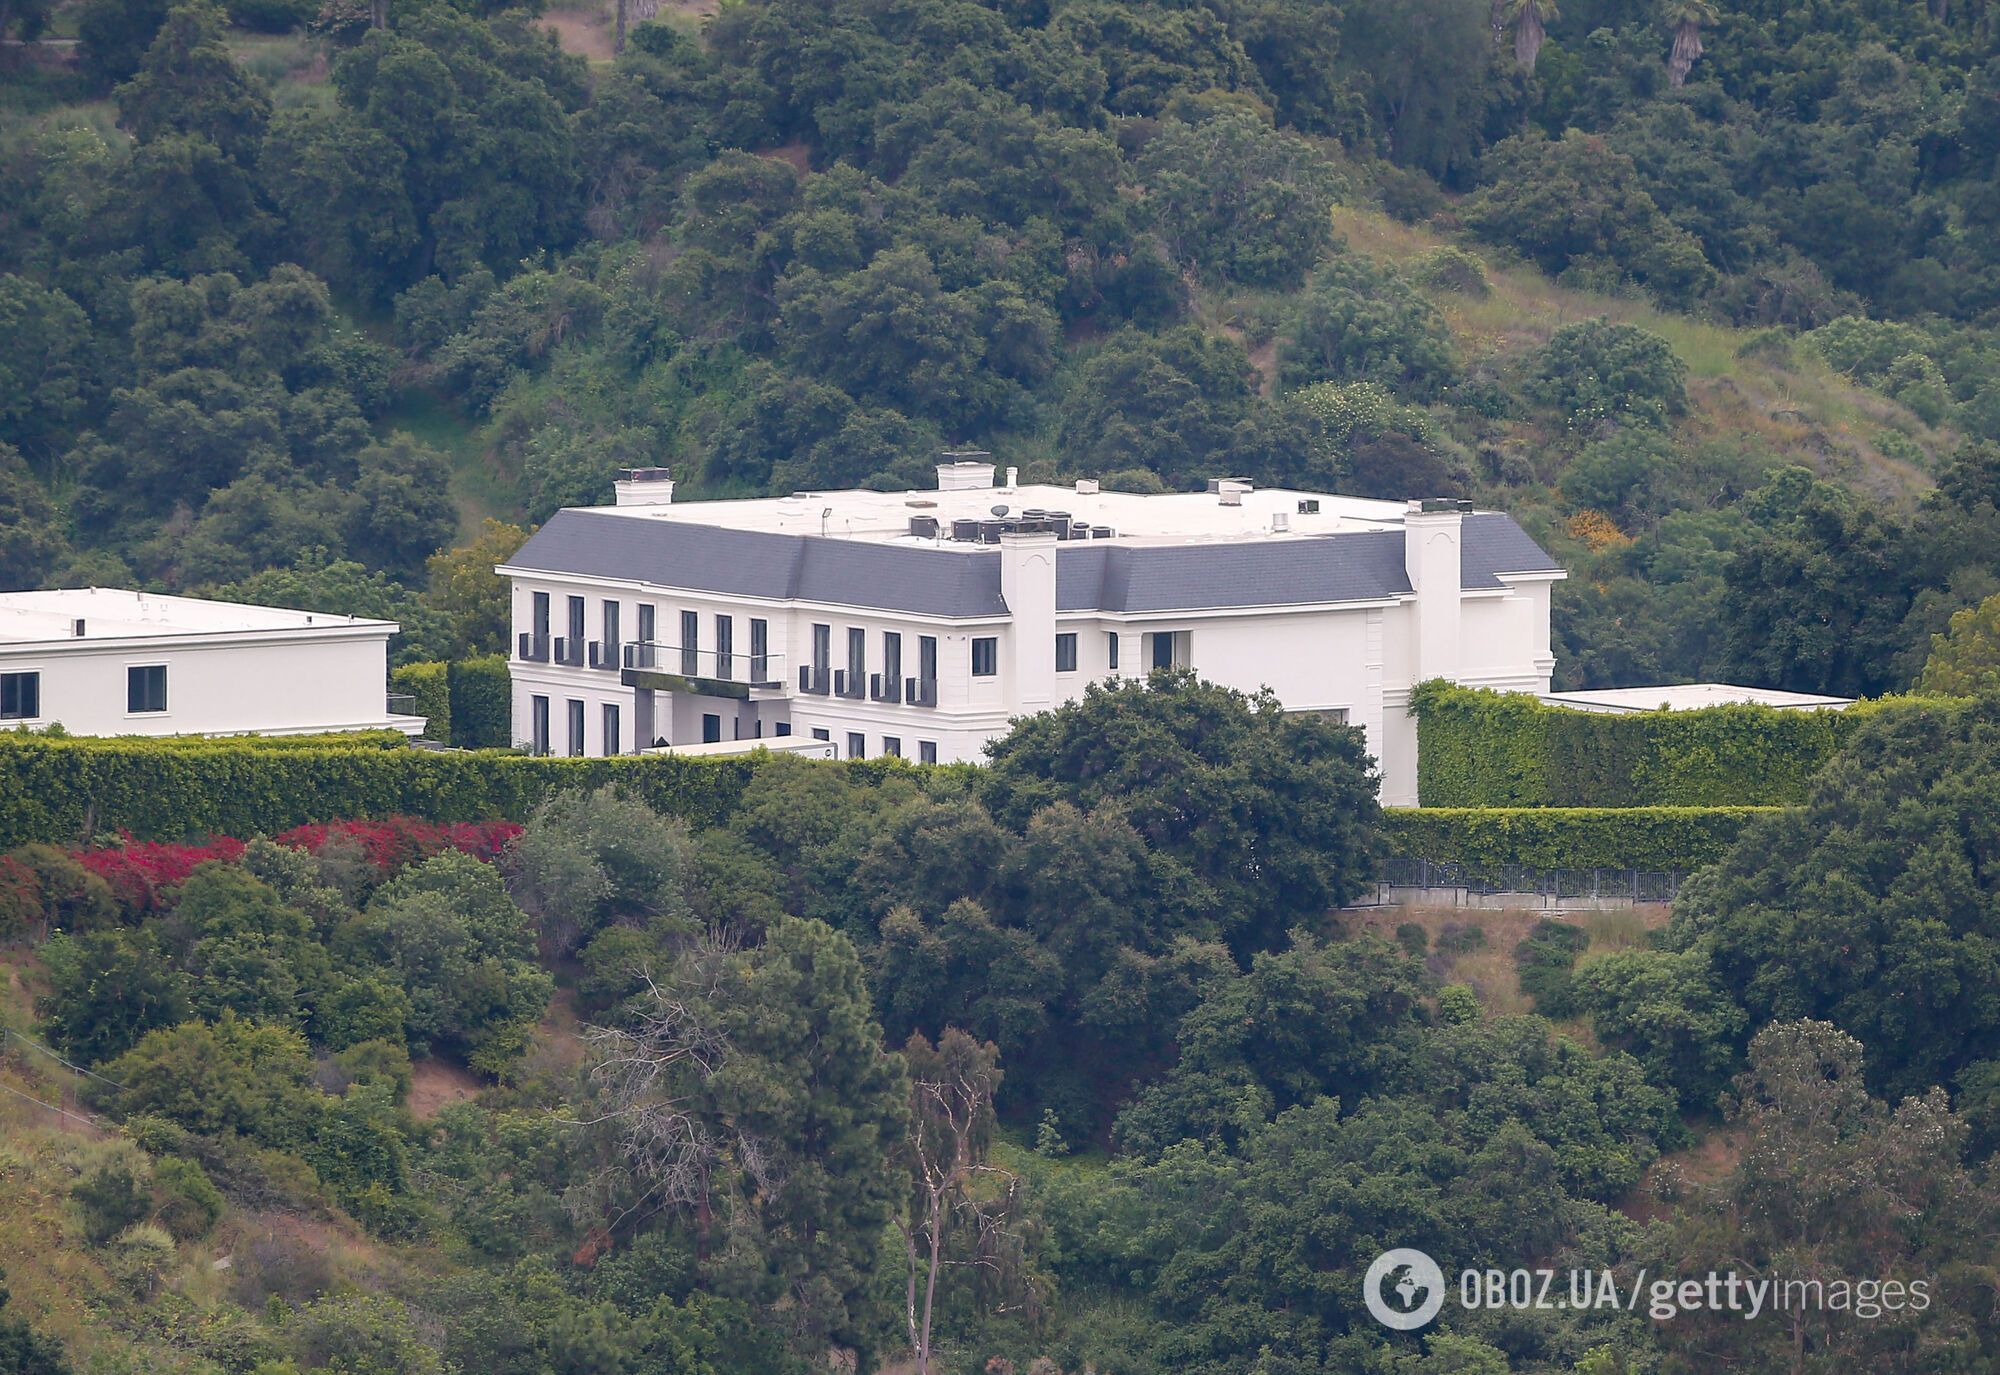 Дженнифер Лопес показала свой роскошный дом за $60 миллионов, где живет с Беном Аффлеком. Фото